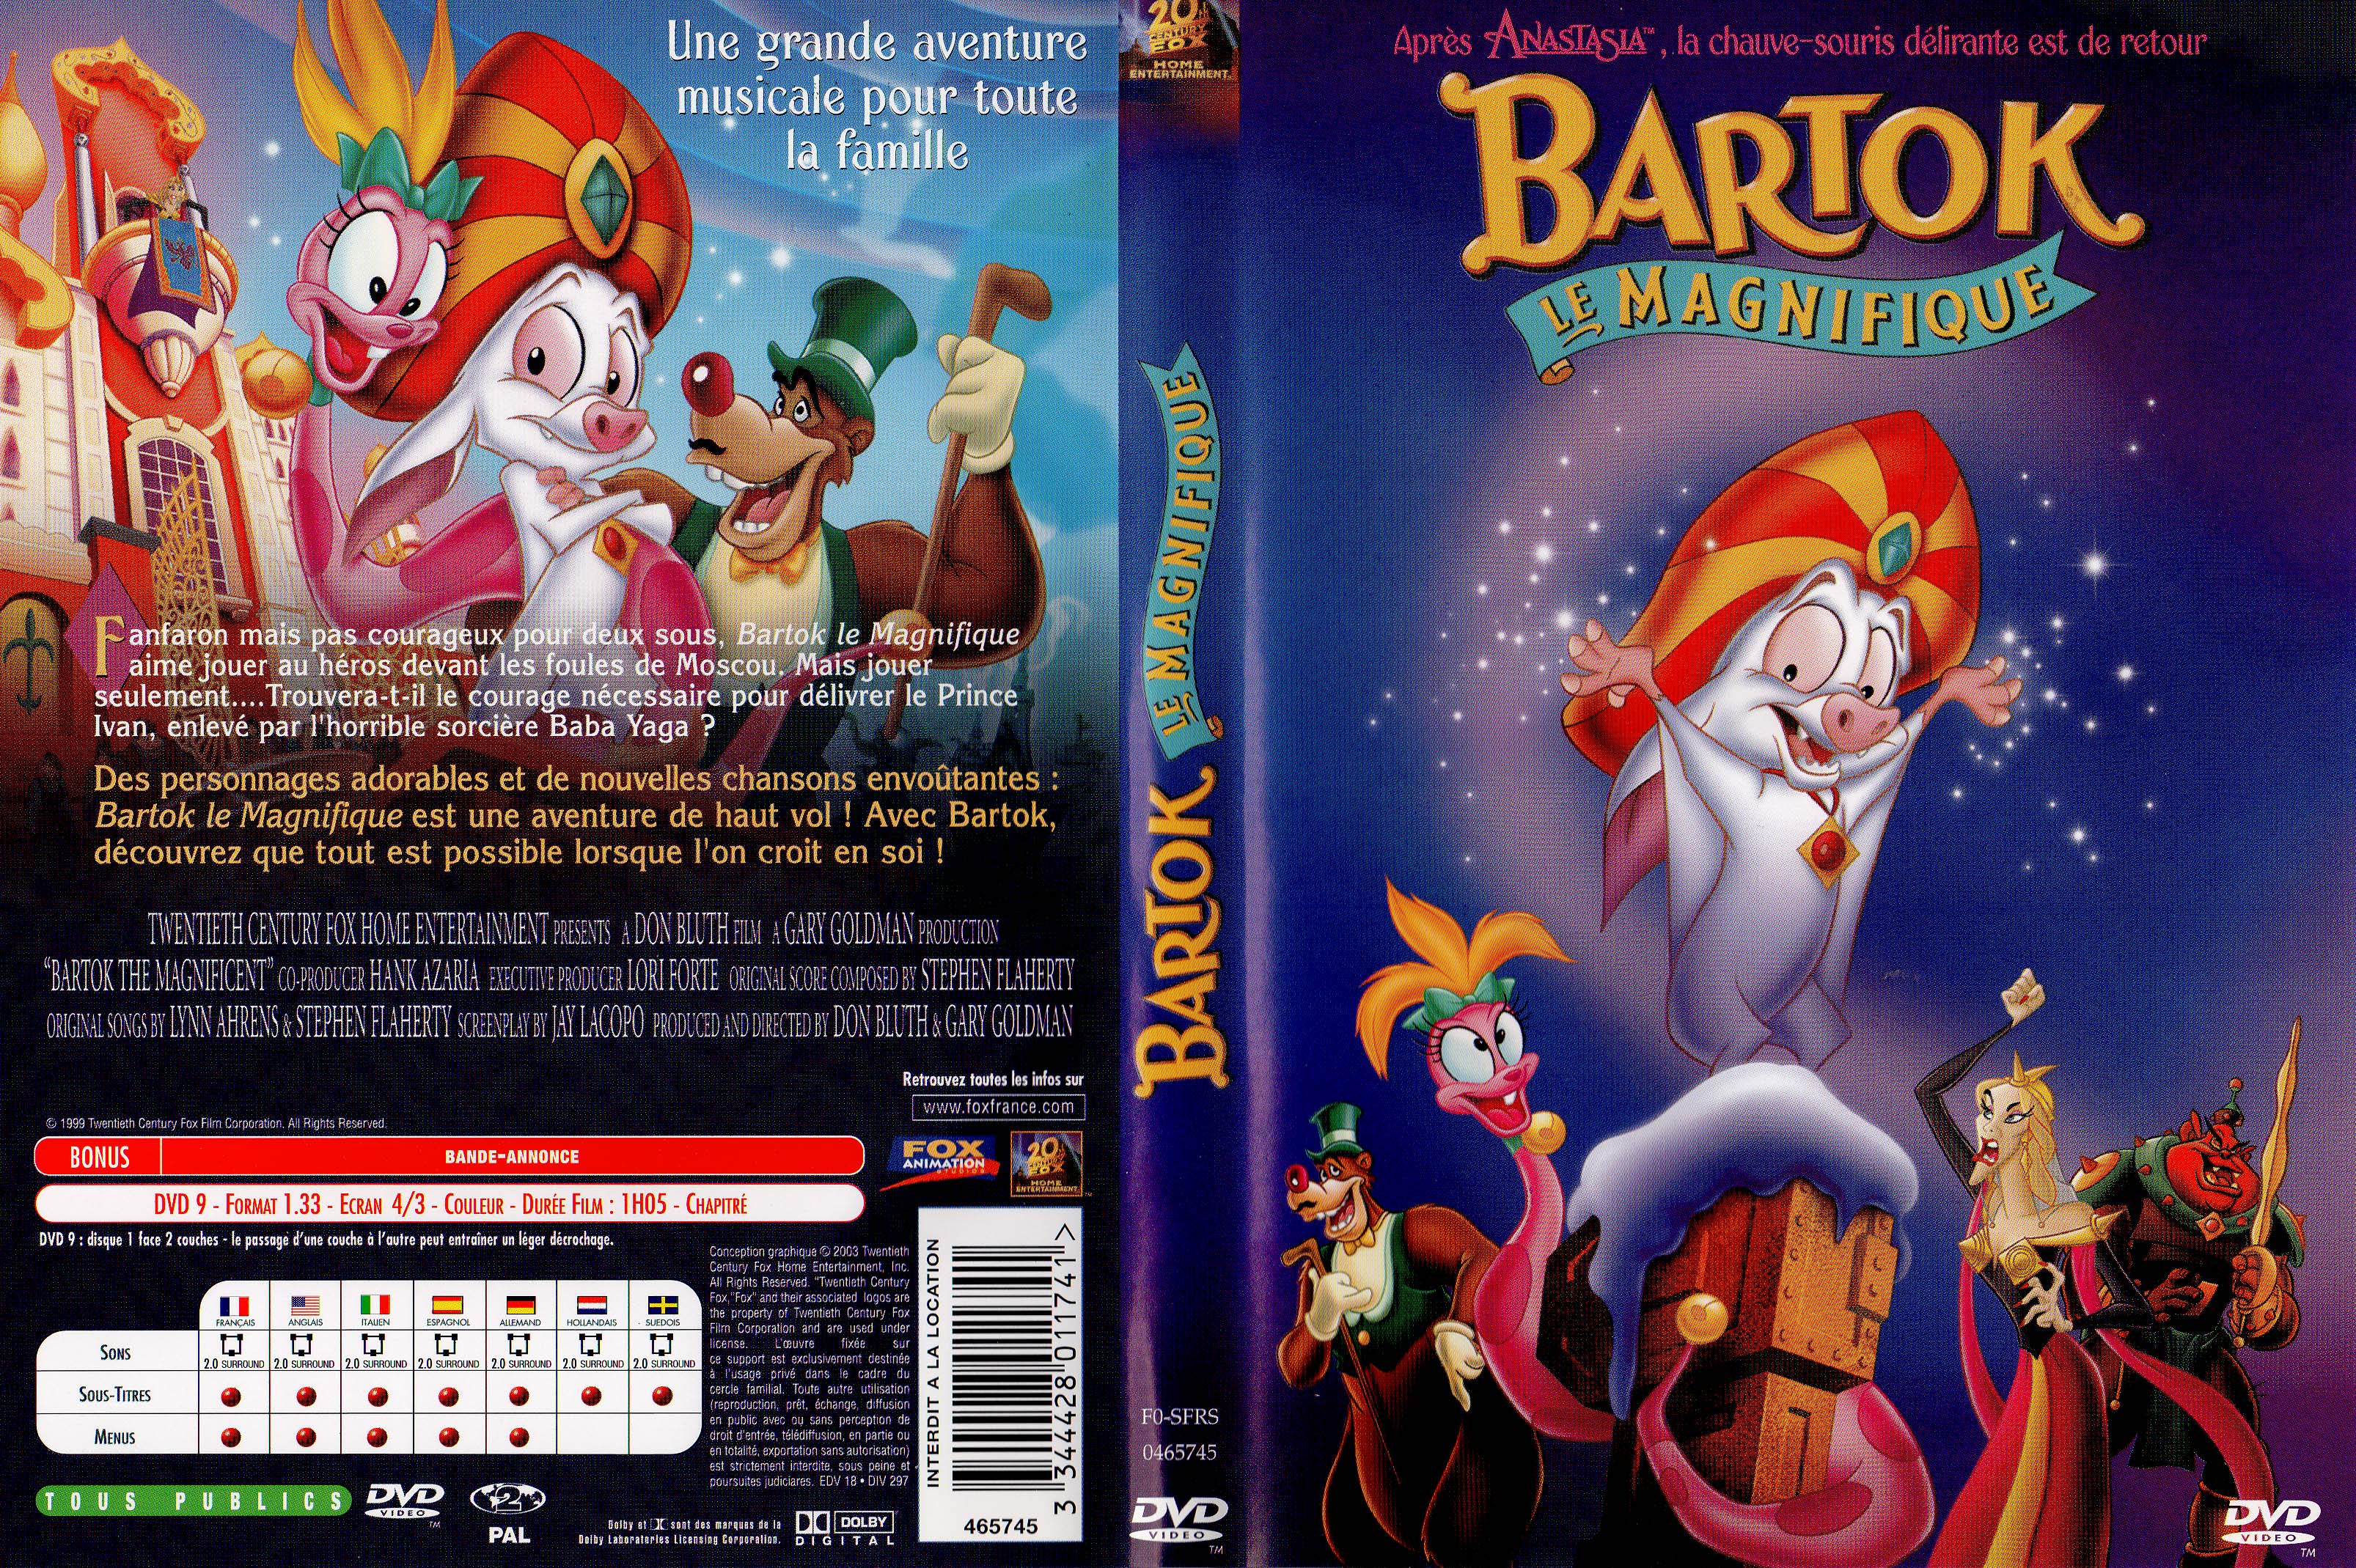 Jaquette DVD Bartok le magnifique v2